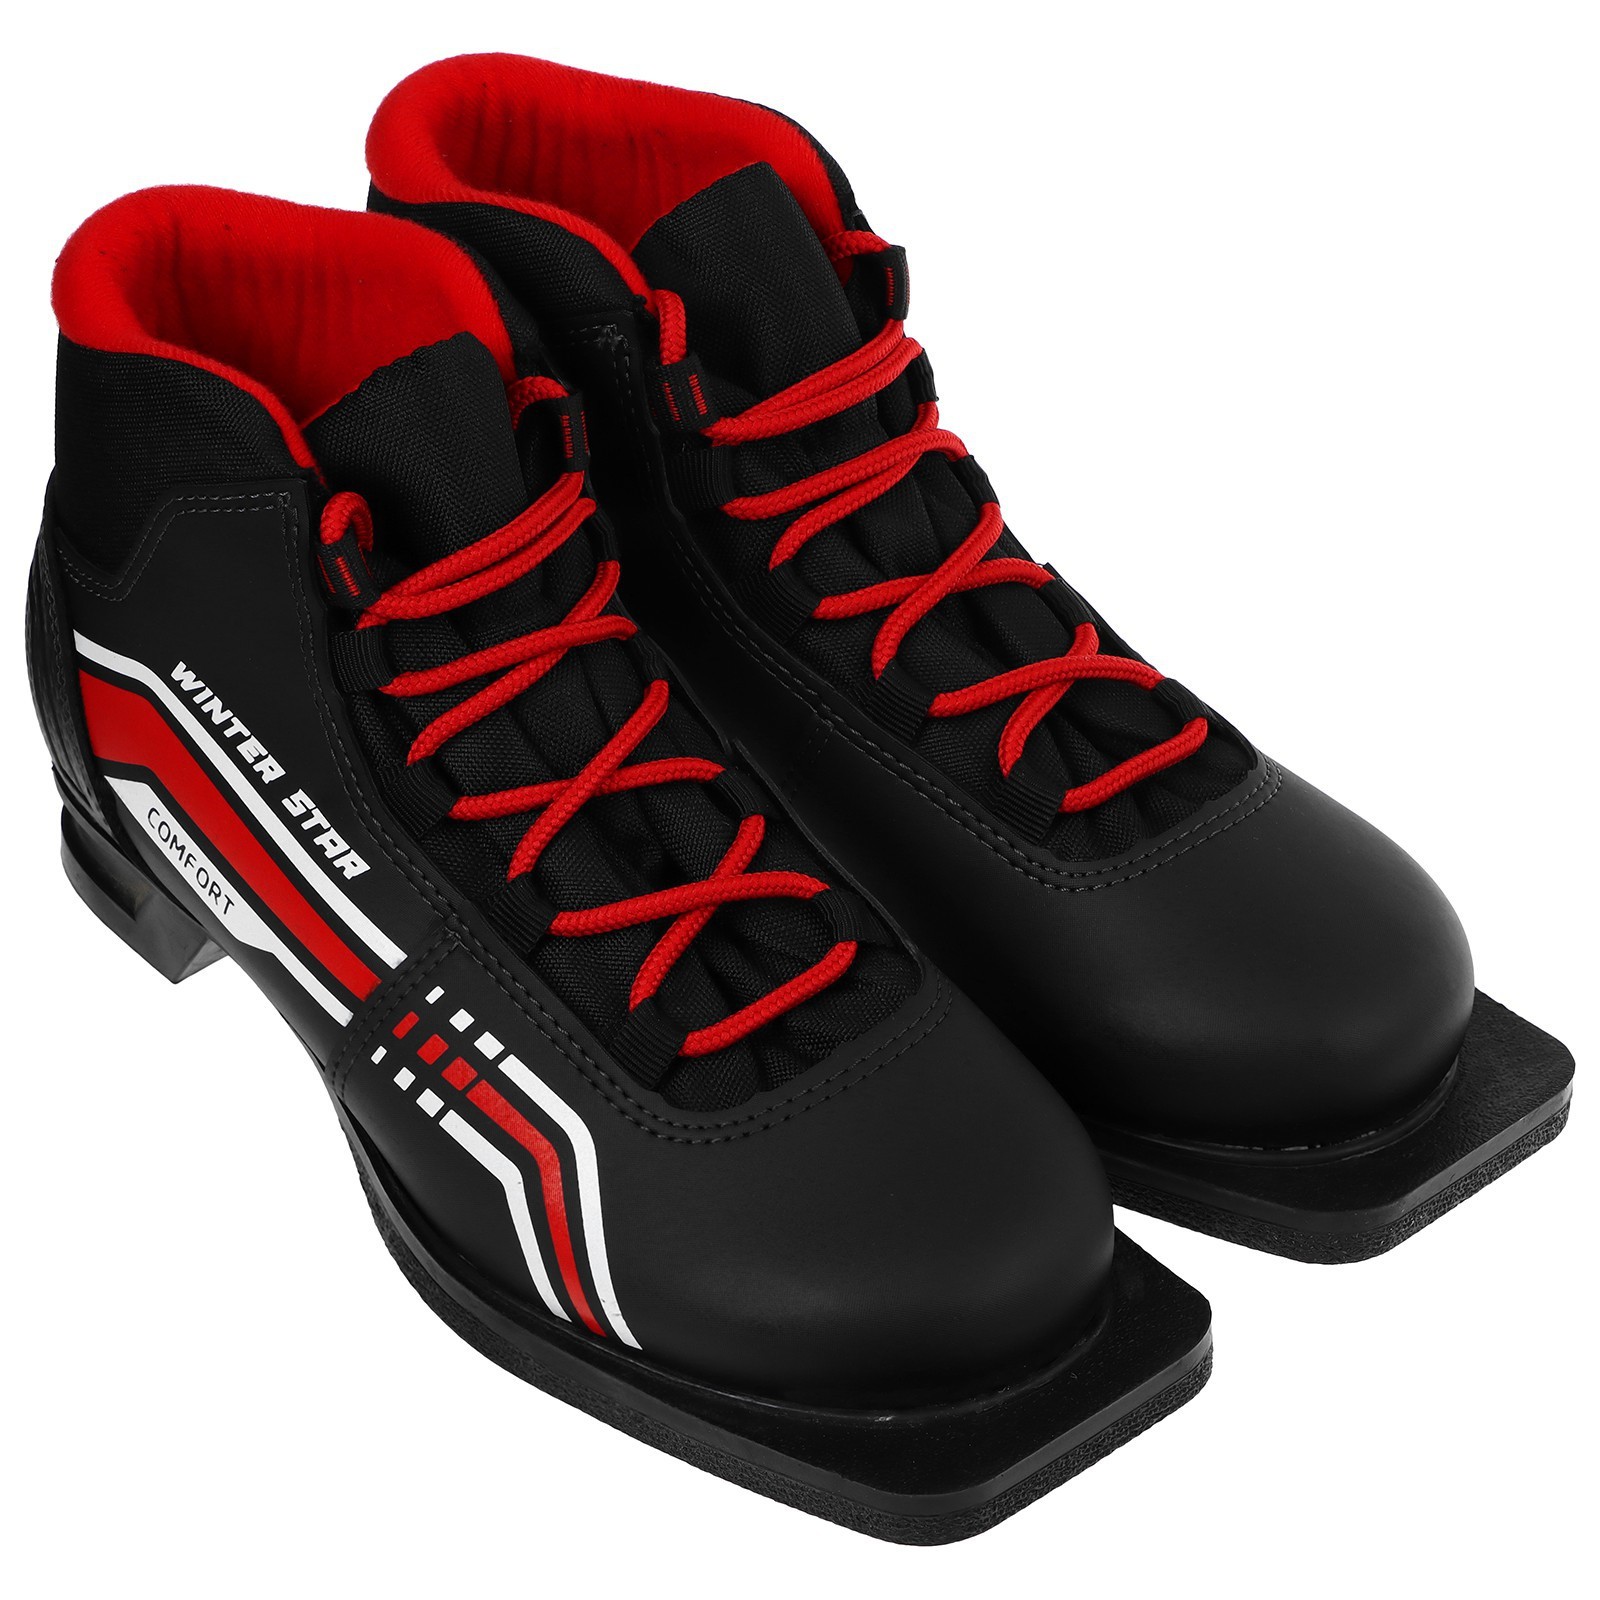 Ботинки лыжные Winter Star comfort, NN75, цвет чёрный/красный, лого белый